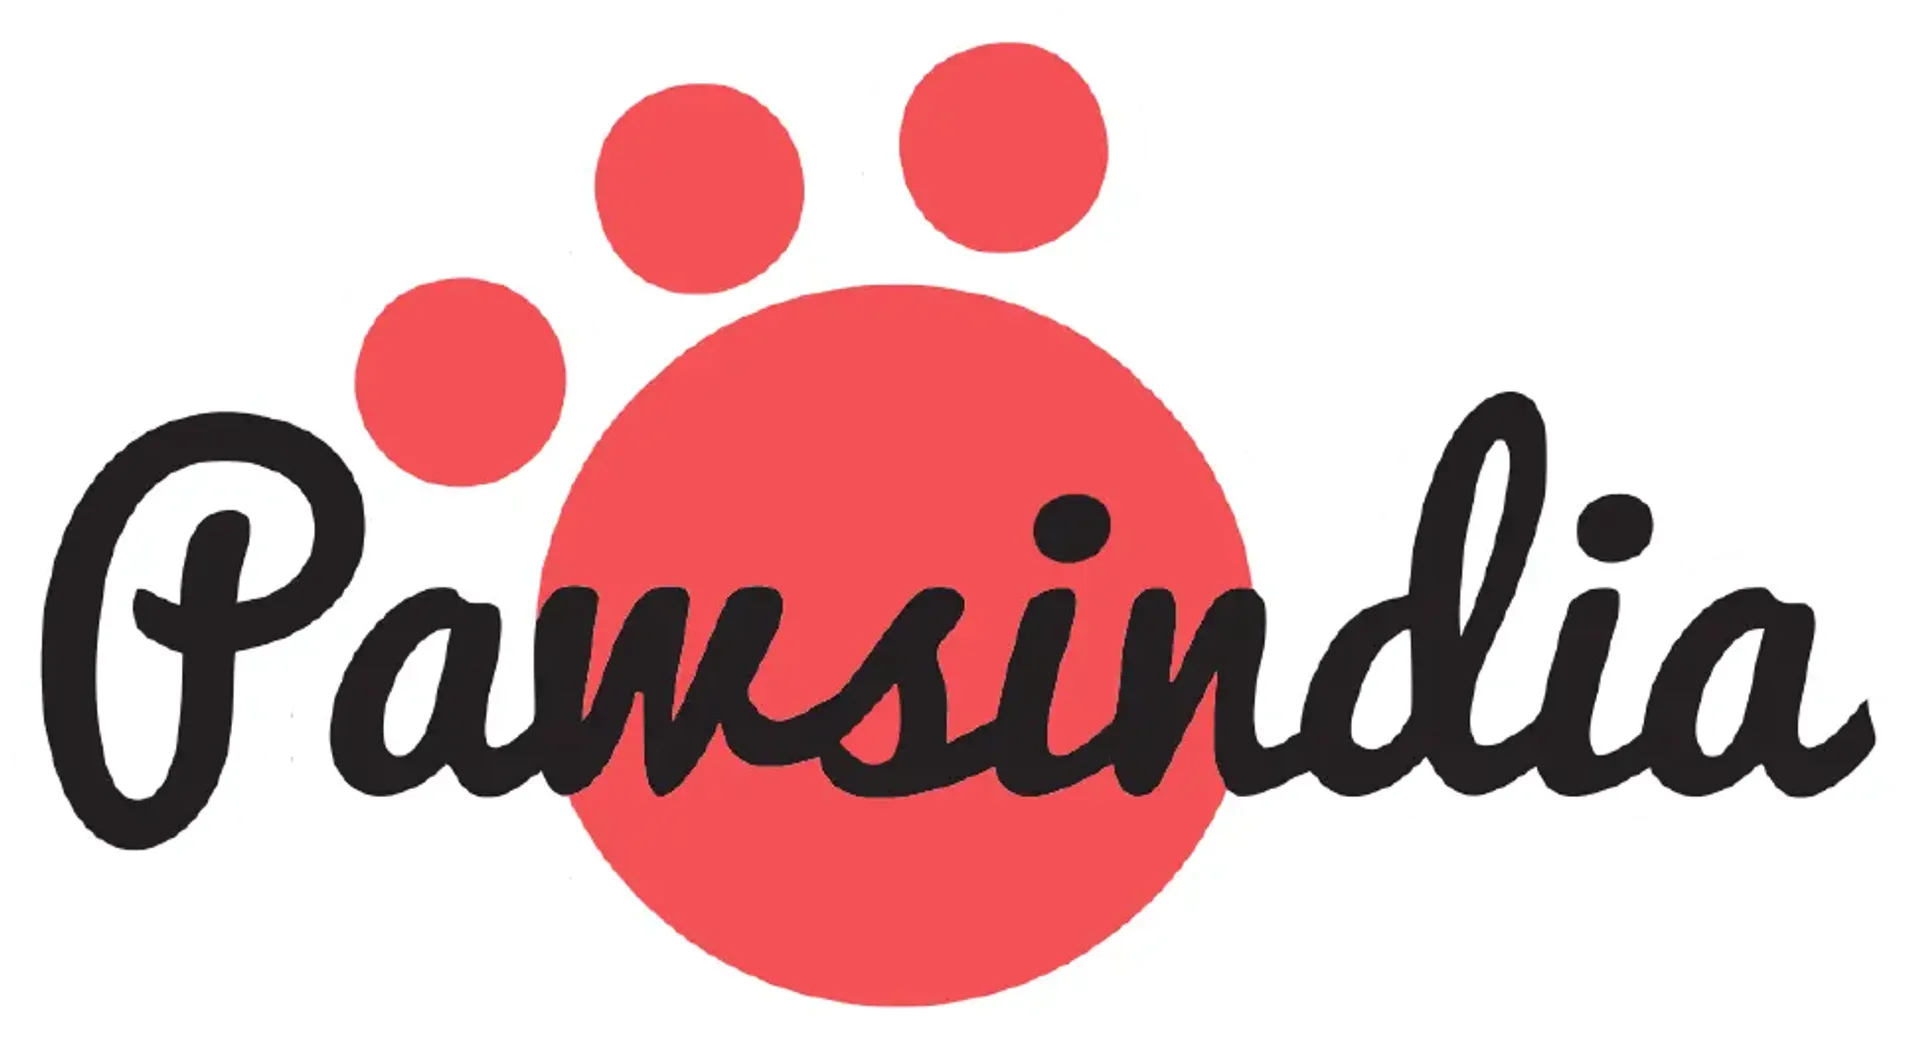 PAWSINDIA logo. Current catalogue